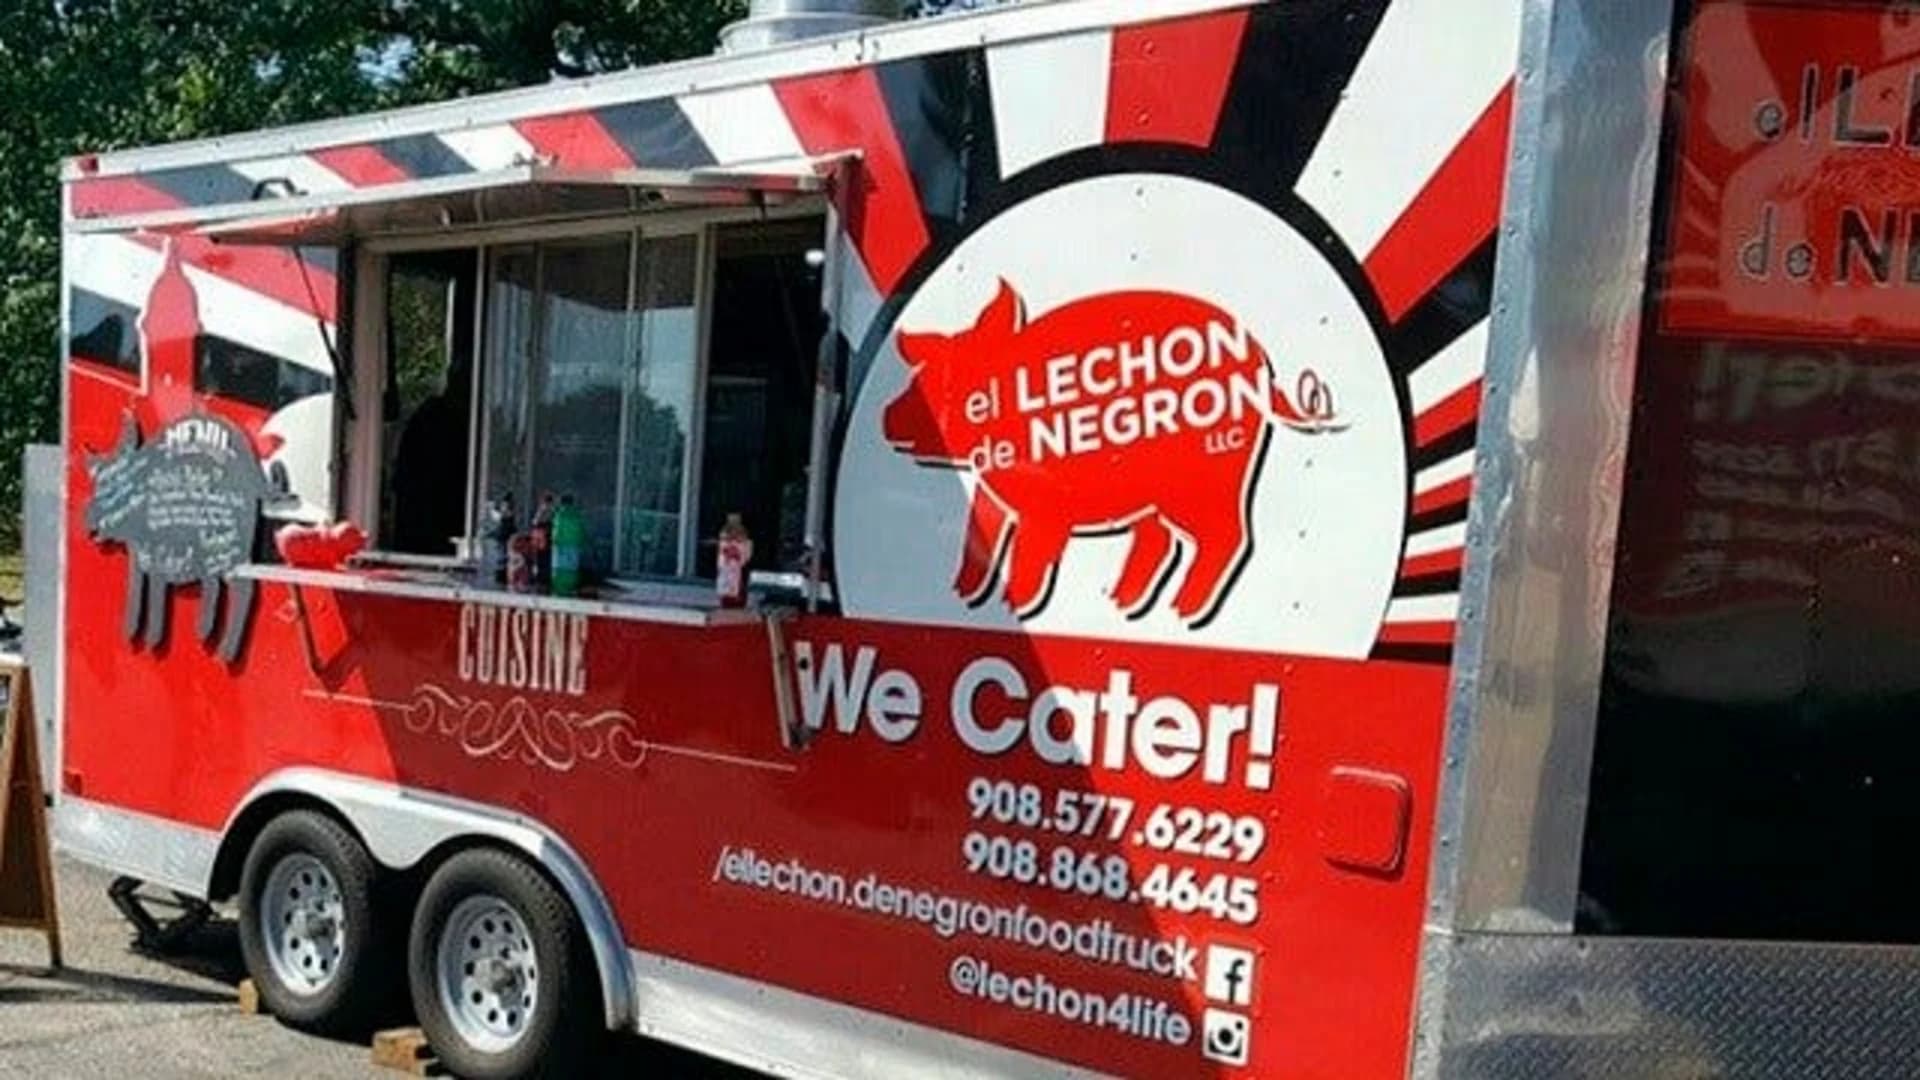 Food Truck Friday: El Lechon de Negron